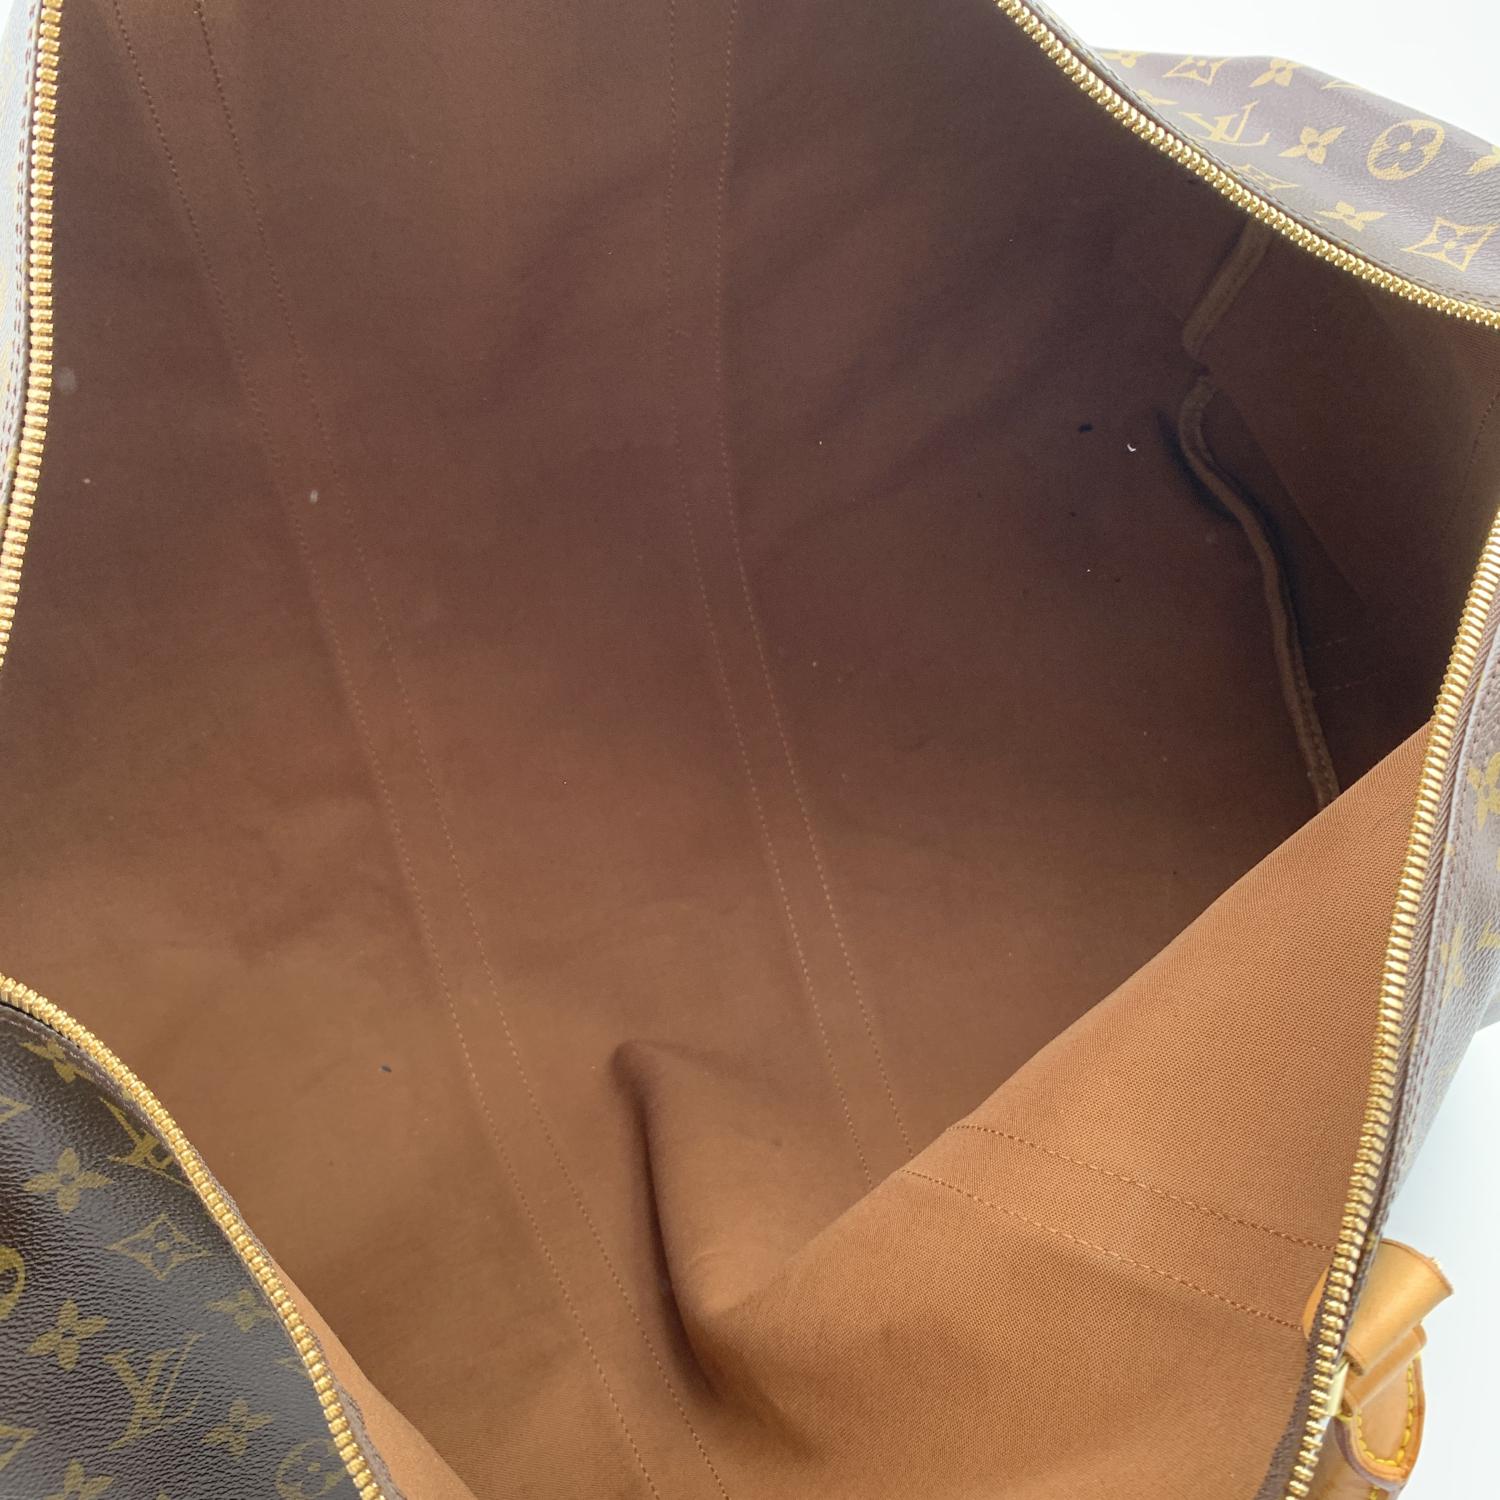 Louis Vuitton Monogram Keepall 60 Travel Large Duffle Bag M41412 3